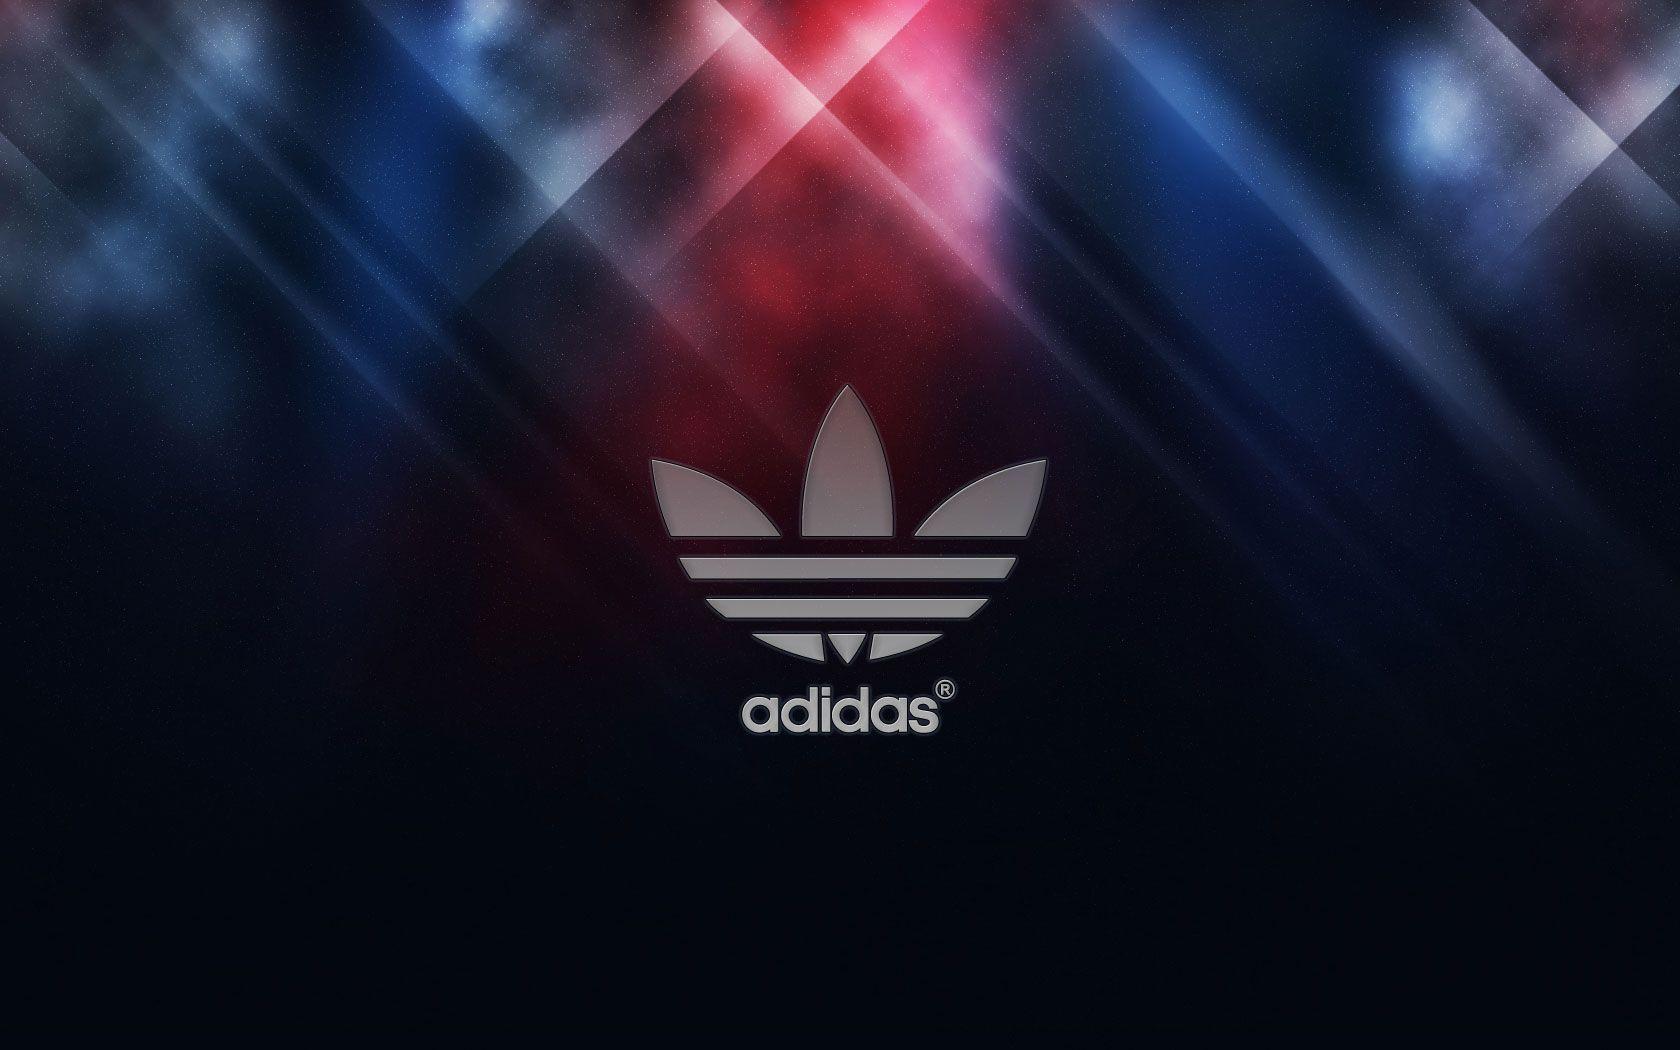 Cool Adidas Logos. Adidas Logo Wallpaper 2013 For Desktop. KING